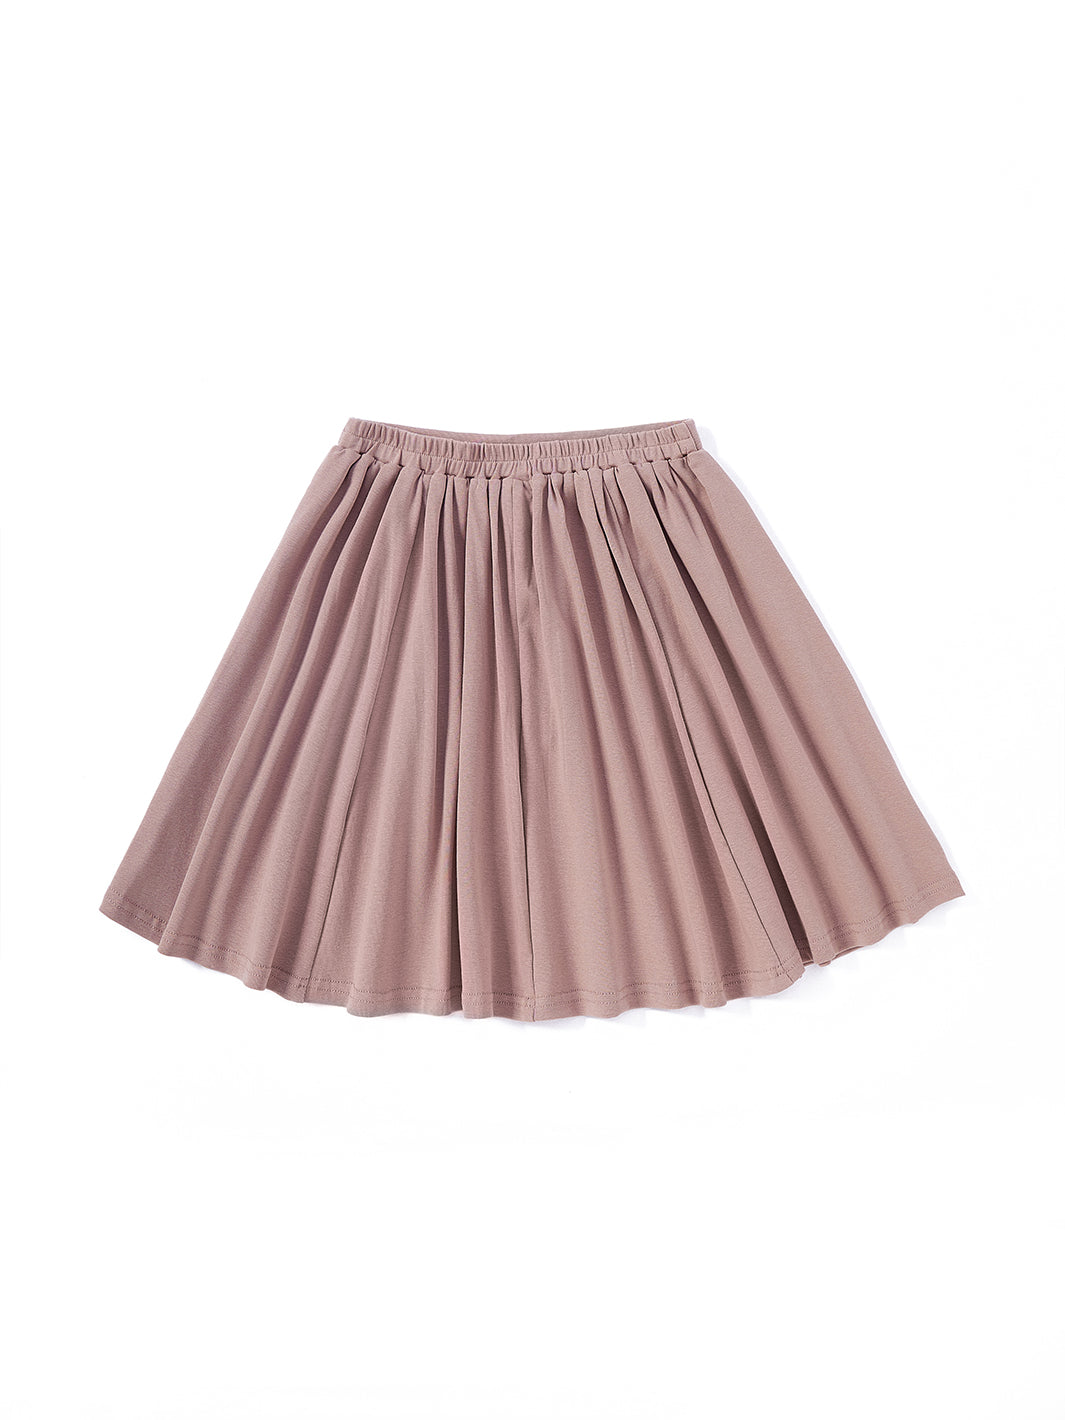 Basic Rib Flare Skirt - Taupe